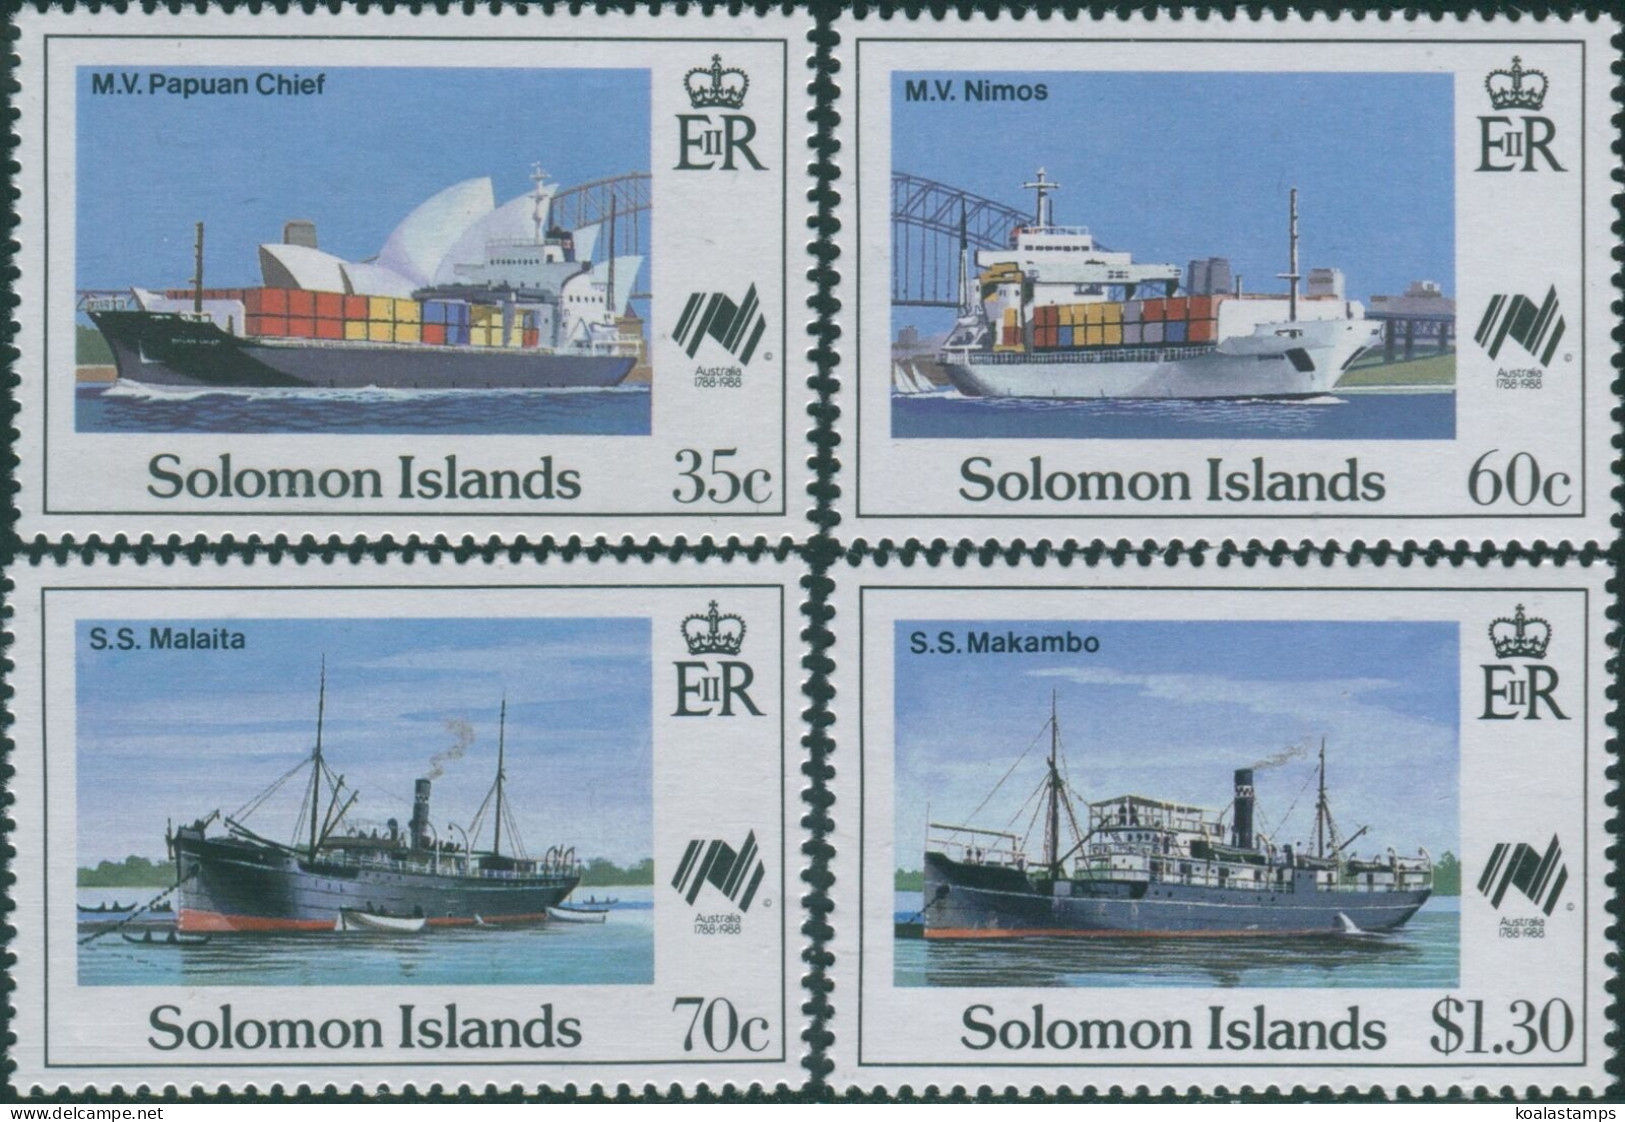 Solomon Islands 1988 SG626-629 Sydpex Stamp Exhibition Set MNH - Solomoneilanden (1978-...)